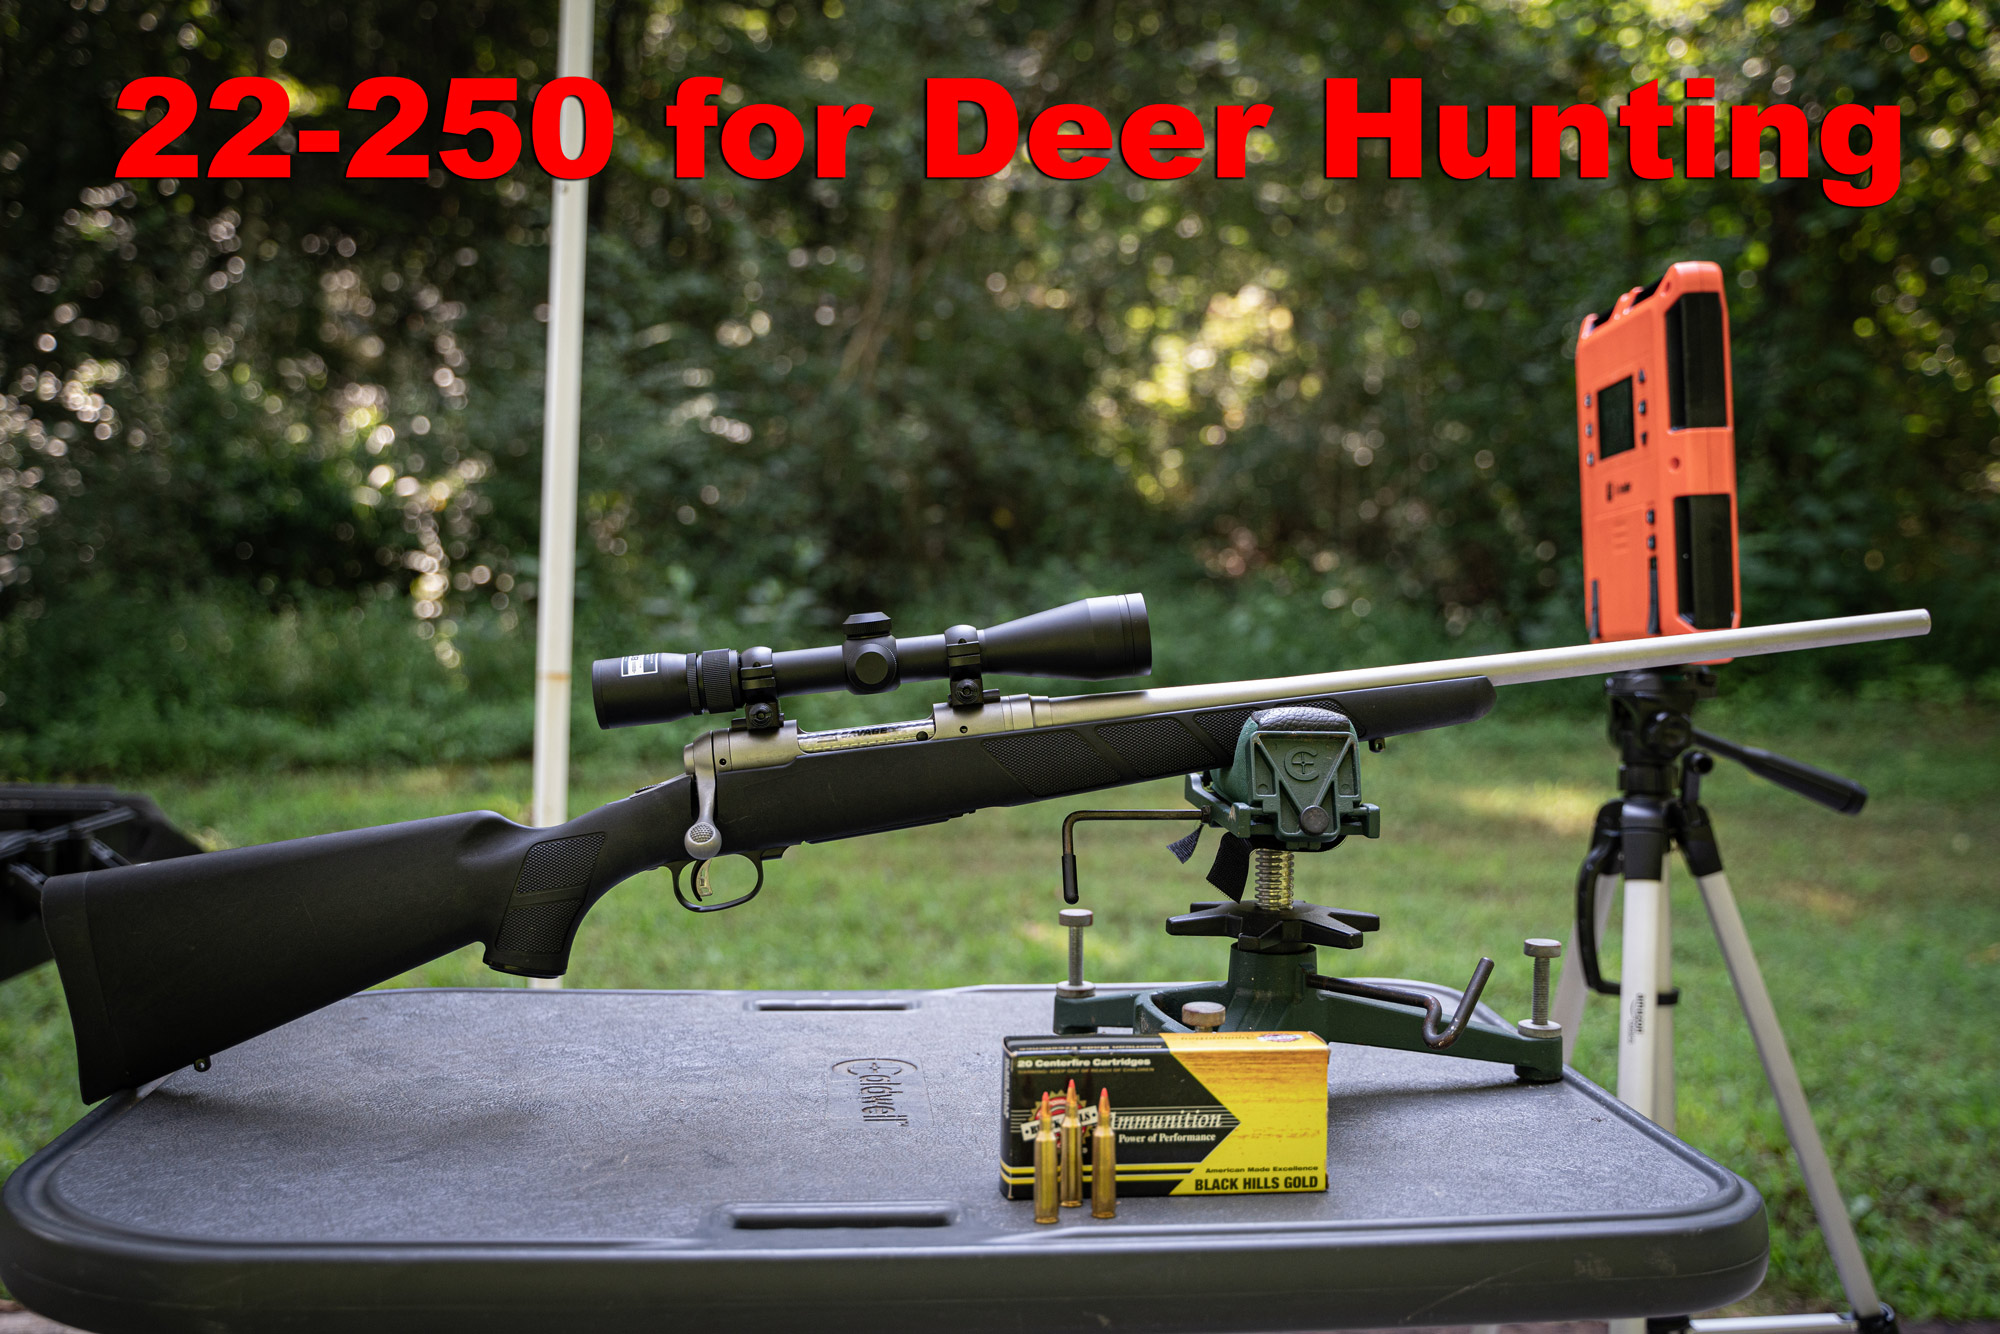 .22-250 for deer